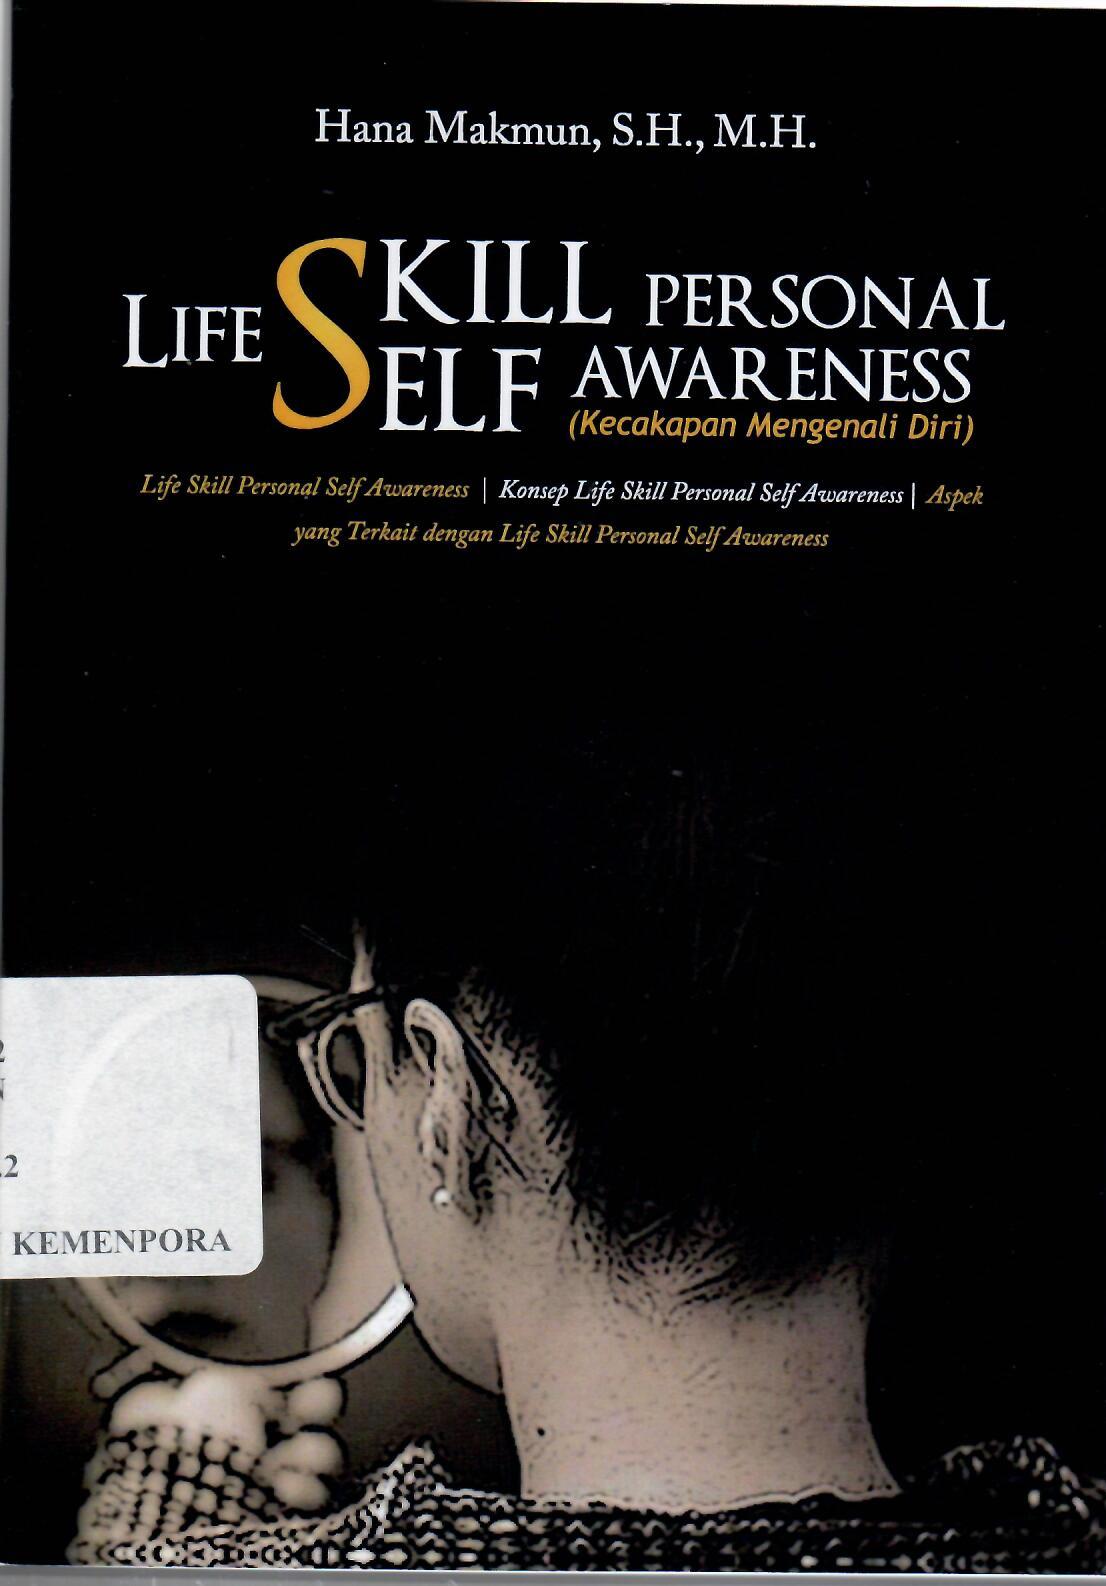 Life Skill Personal Self Awareness (Kecakapan Mengenal Diri)